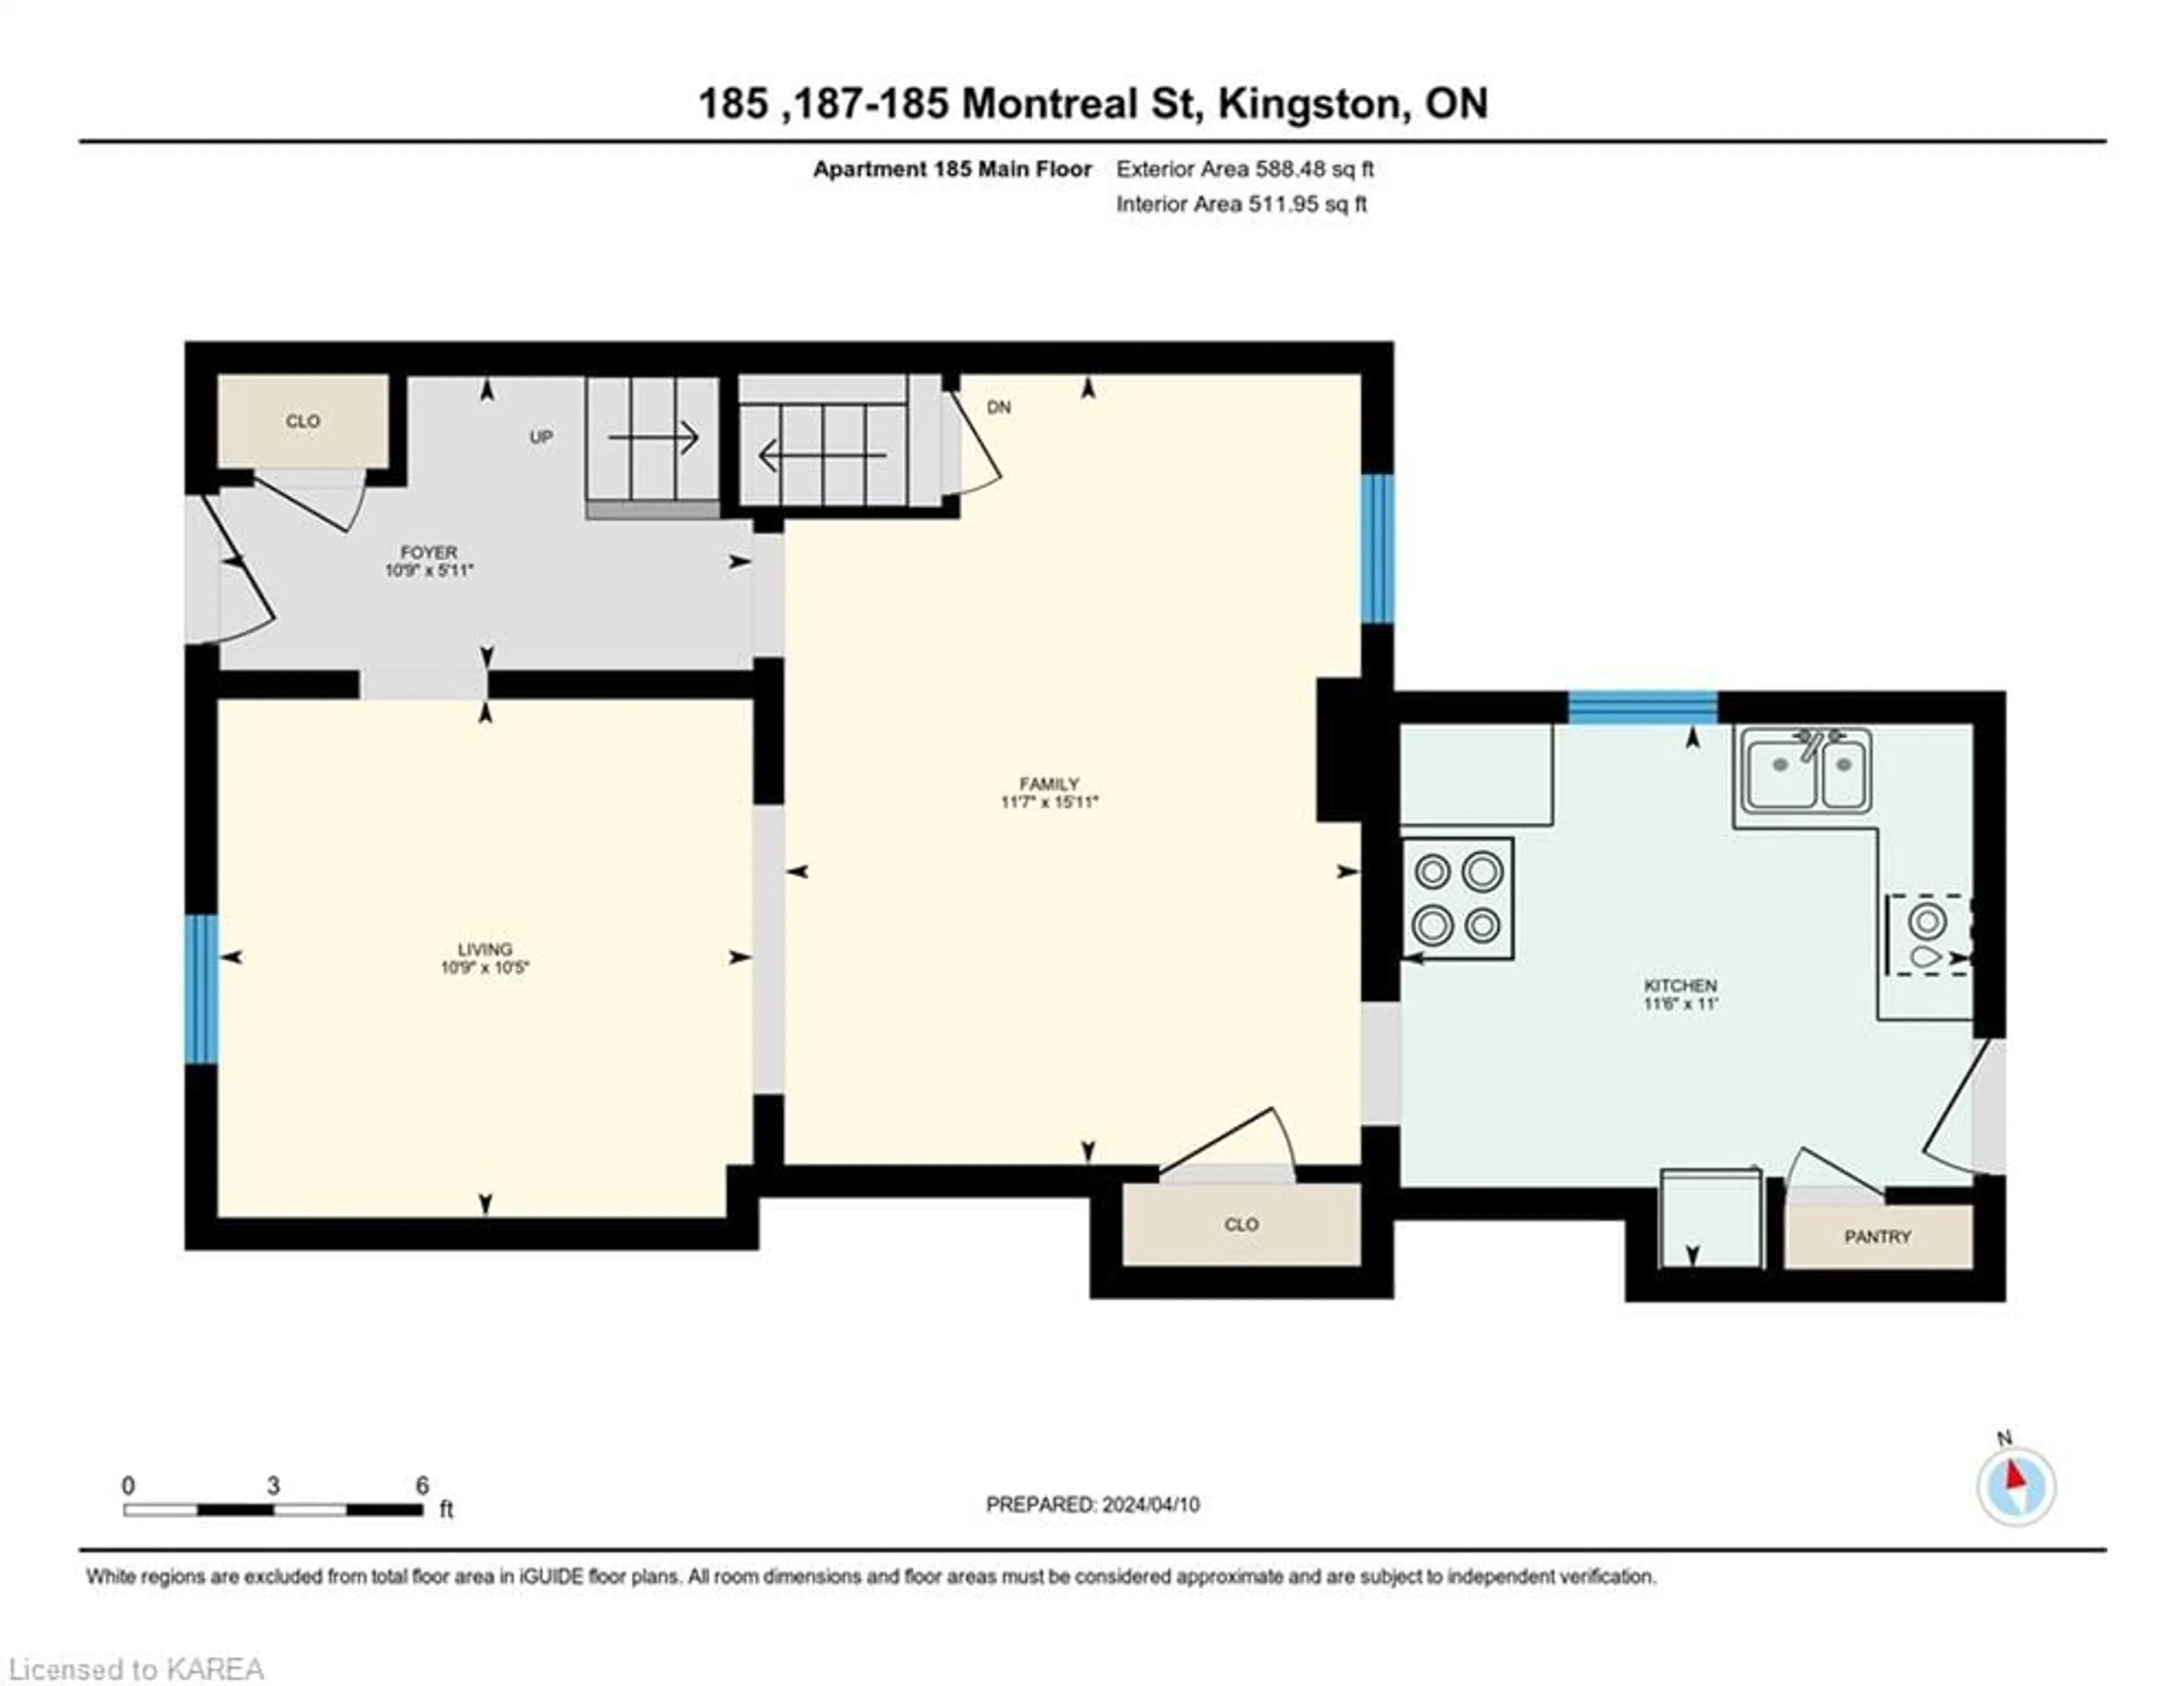 Floor plan for 185-187 Montreal St, Kingston Ontario K7K 3G5